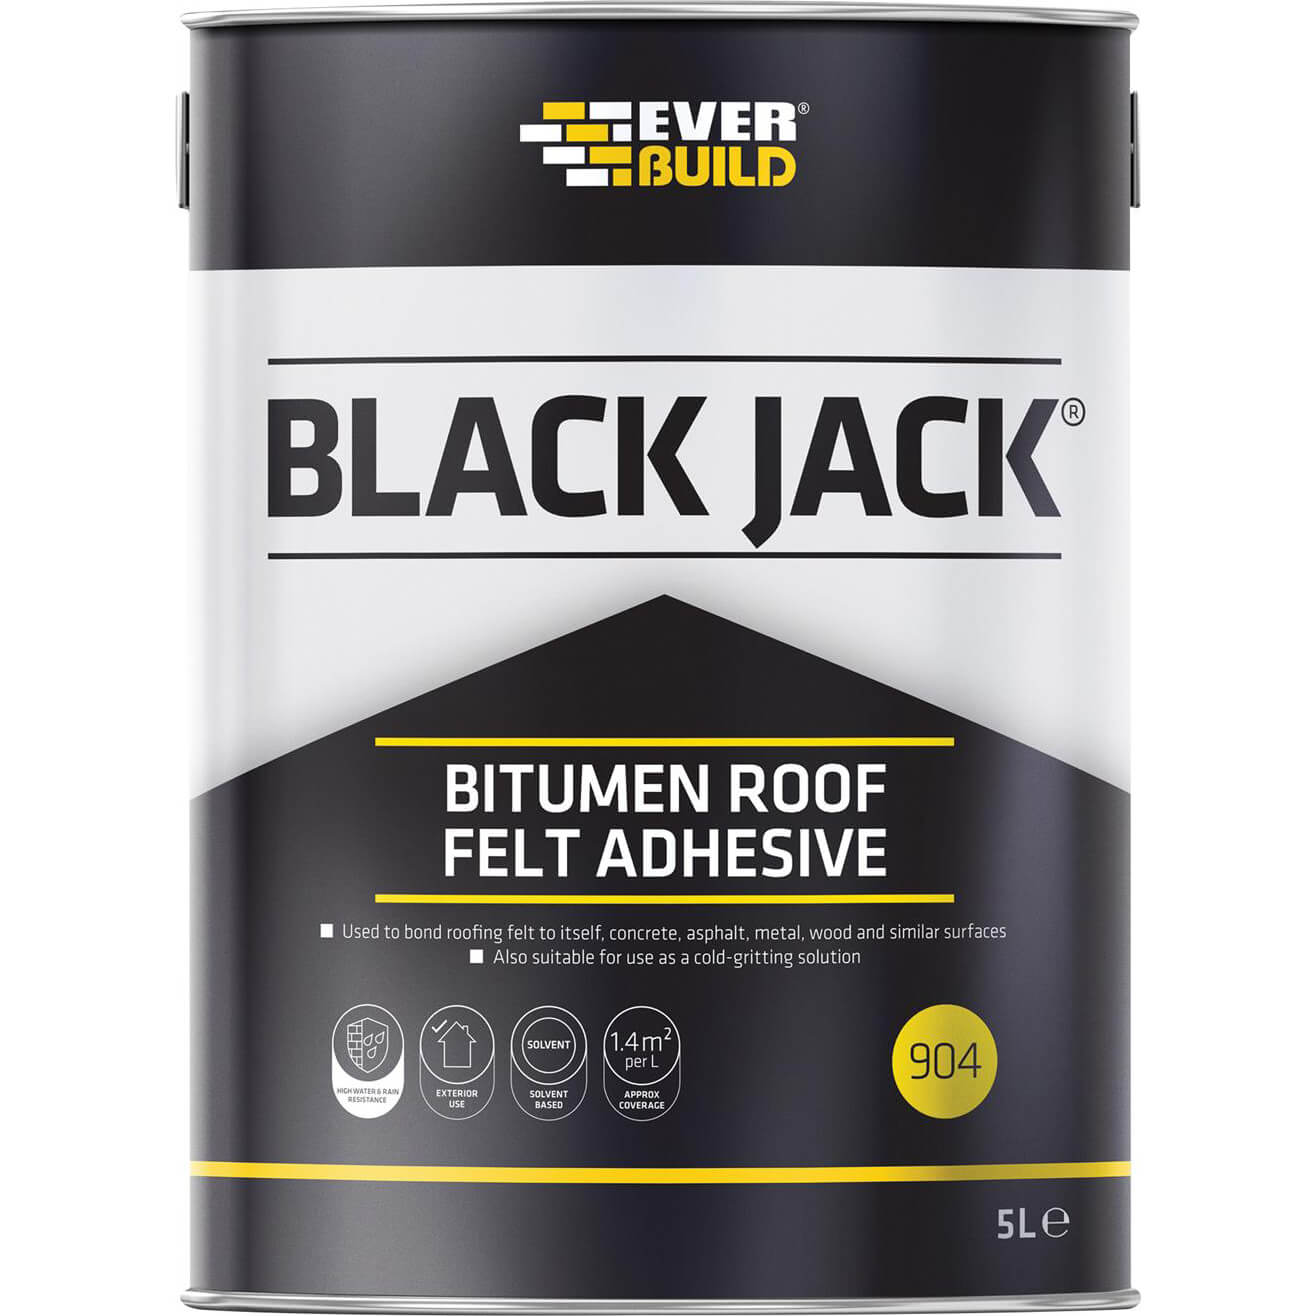 Image of Everbuild Black Jack 904 Bitumen Roofing Felt Adhesive 5l